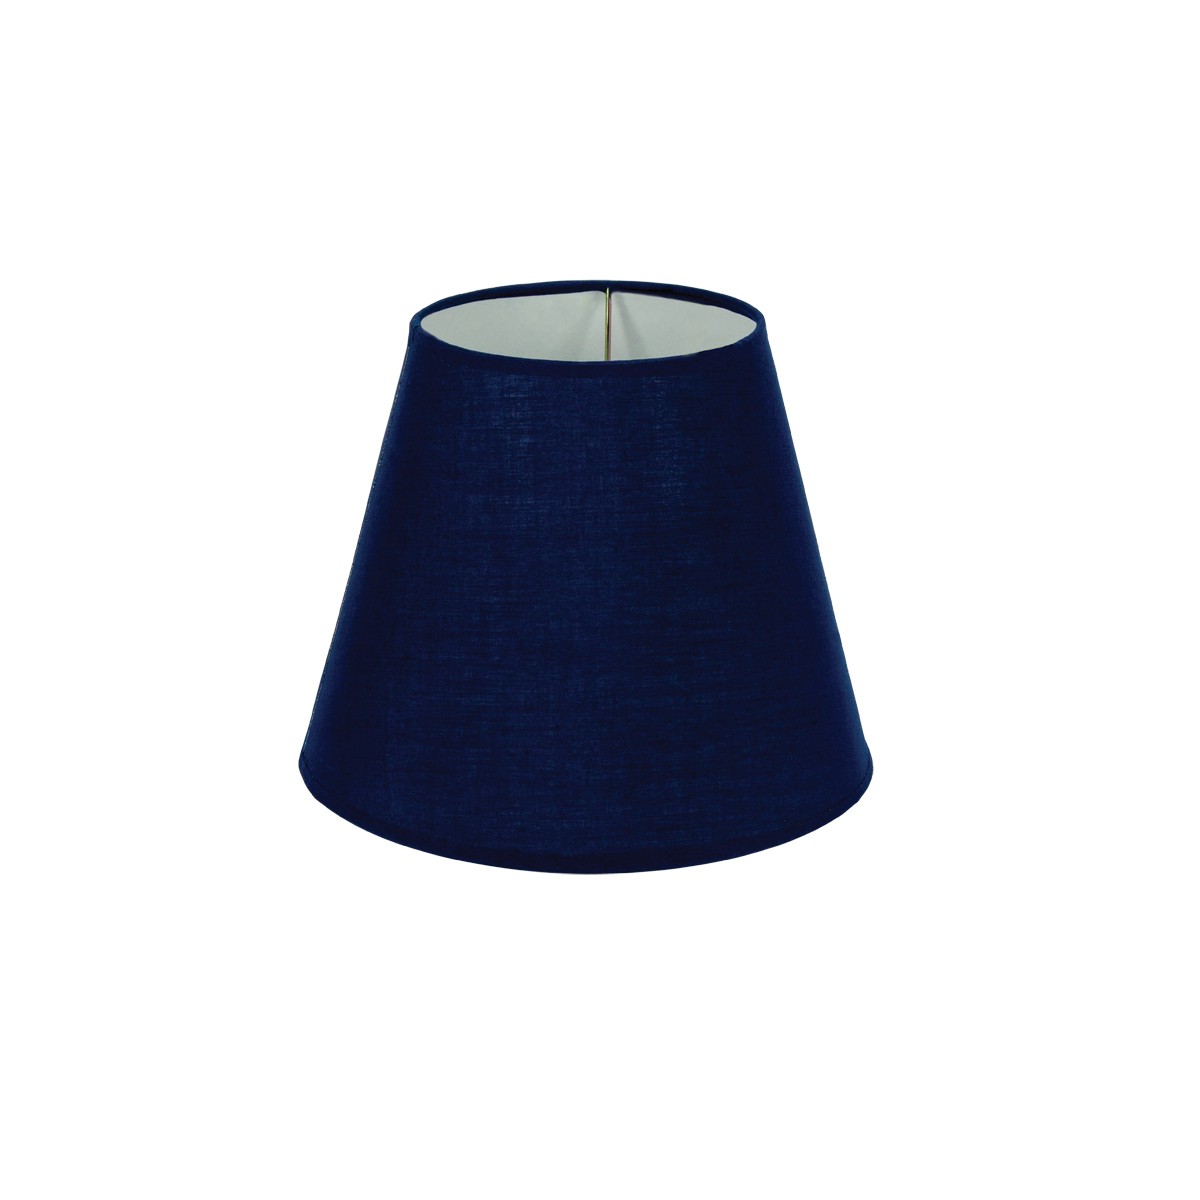 Καπέλο Μονόχρωμο Στρογγυλό Φ22cm Κάτω Πλευρά  -Σε Μπλε Χρώμα       VK/E27/E14/D22/BL